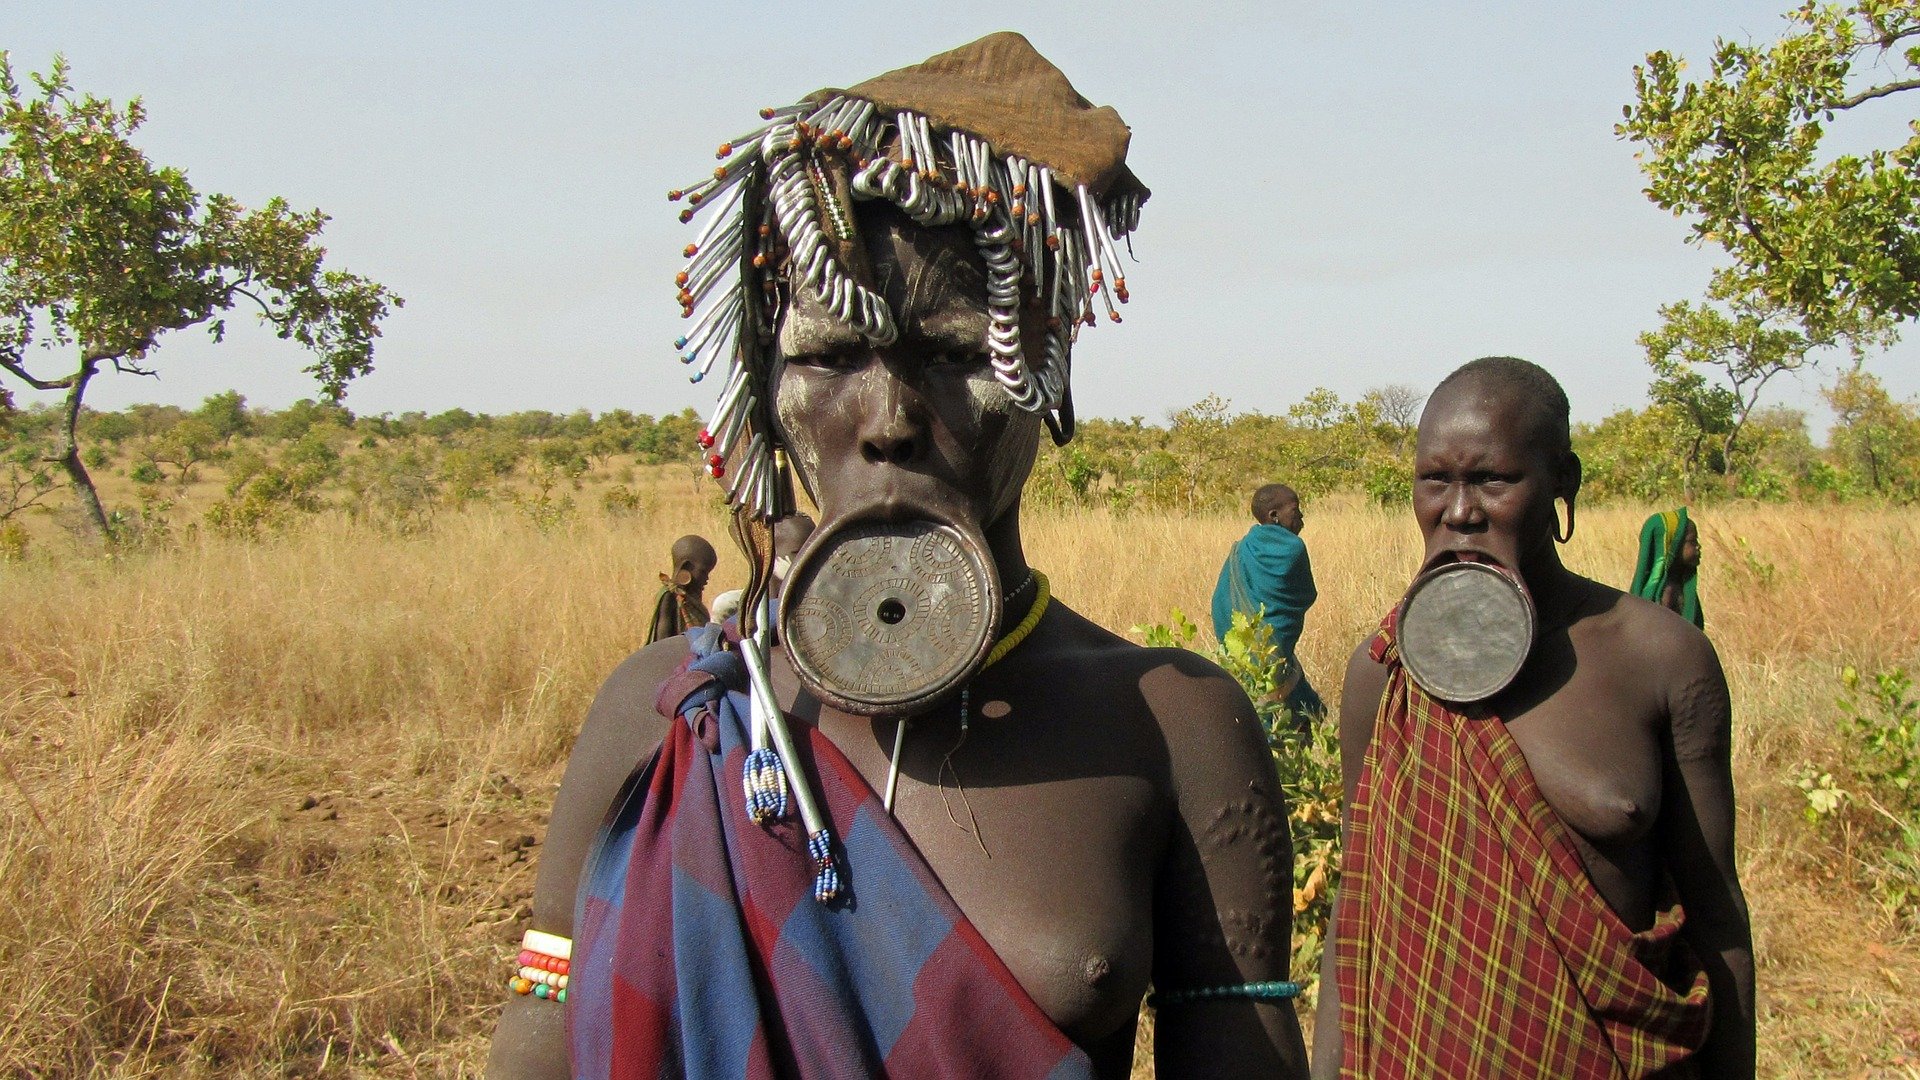 Pareja (Hombre y mujer) del pueblo Mursi (tribu africana)